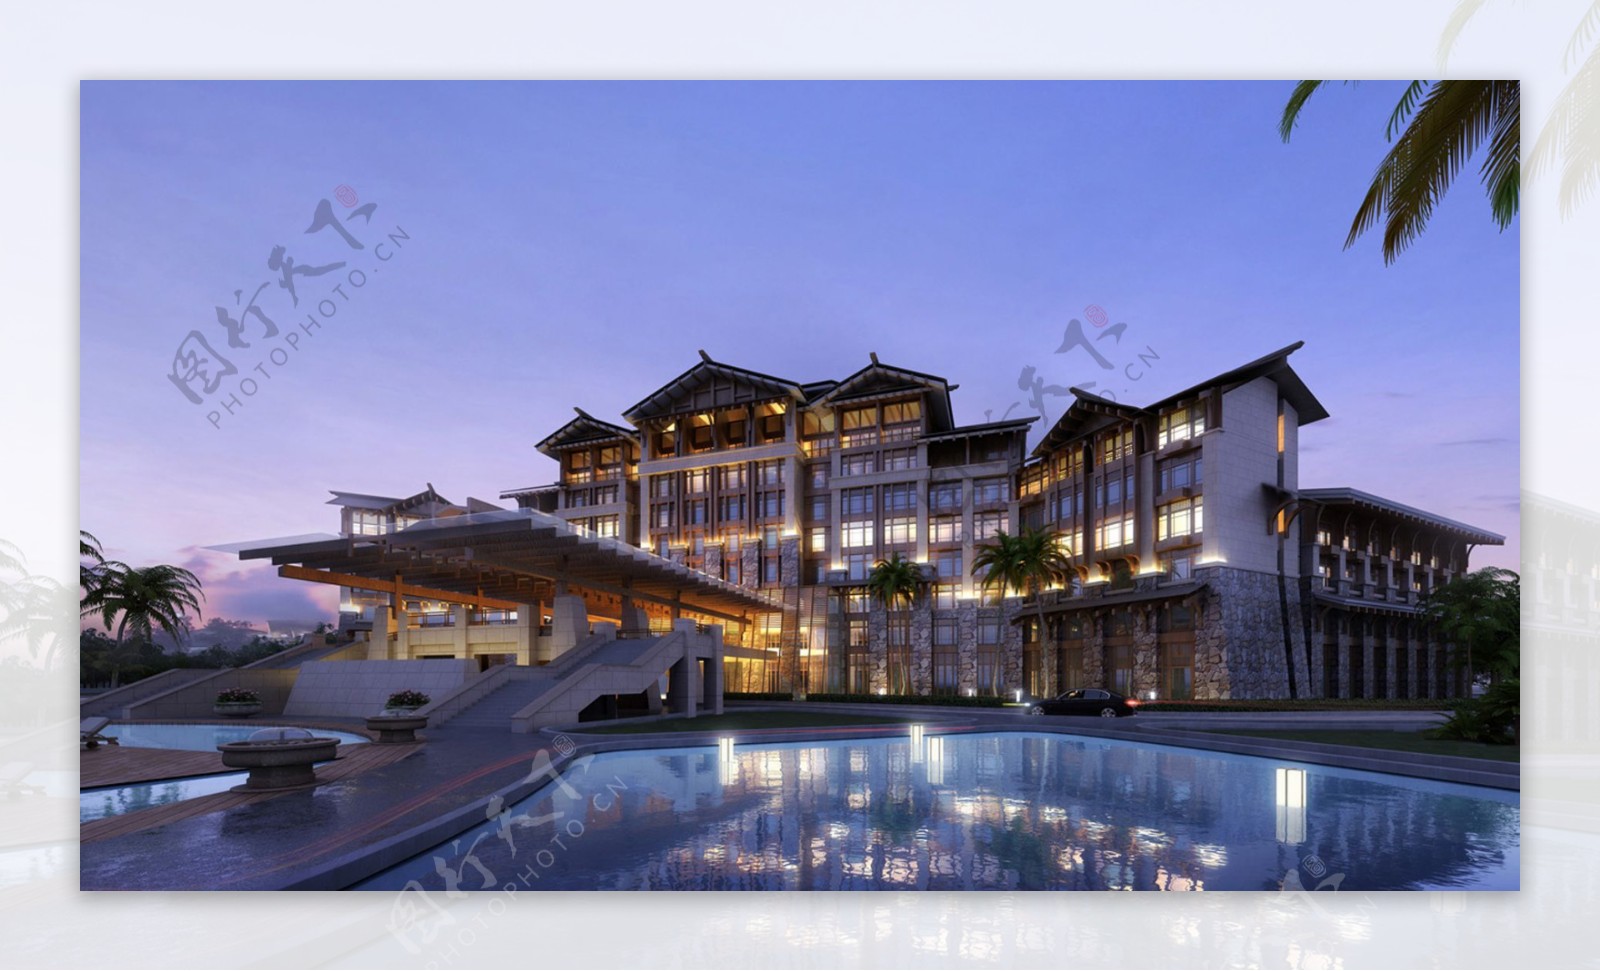 东南亚风格酒店图片